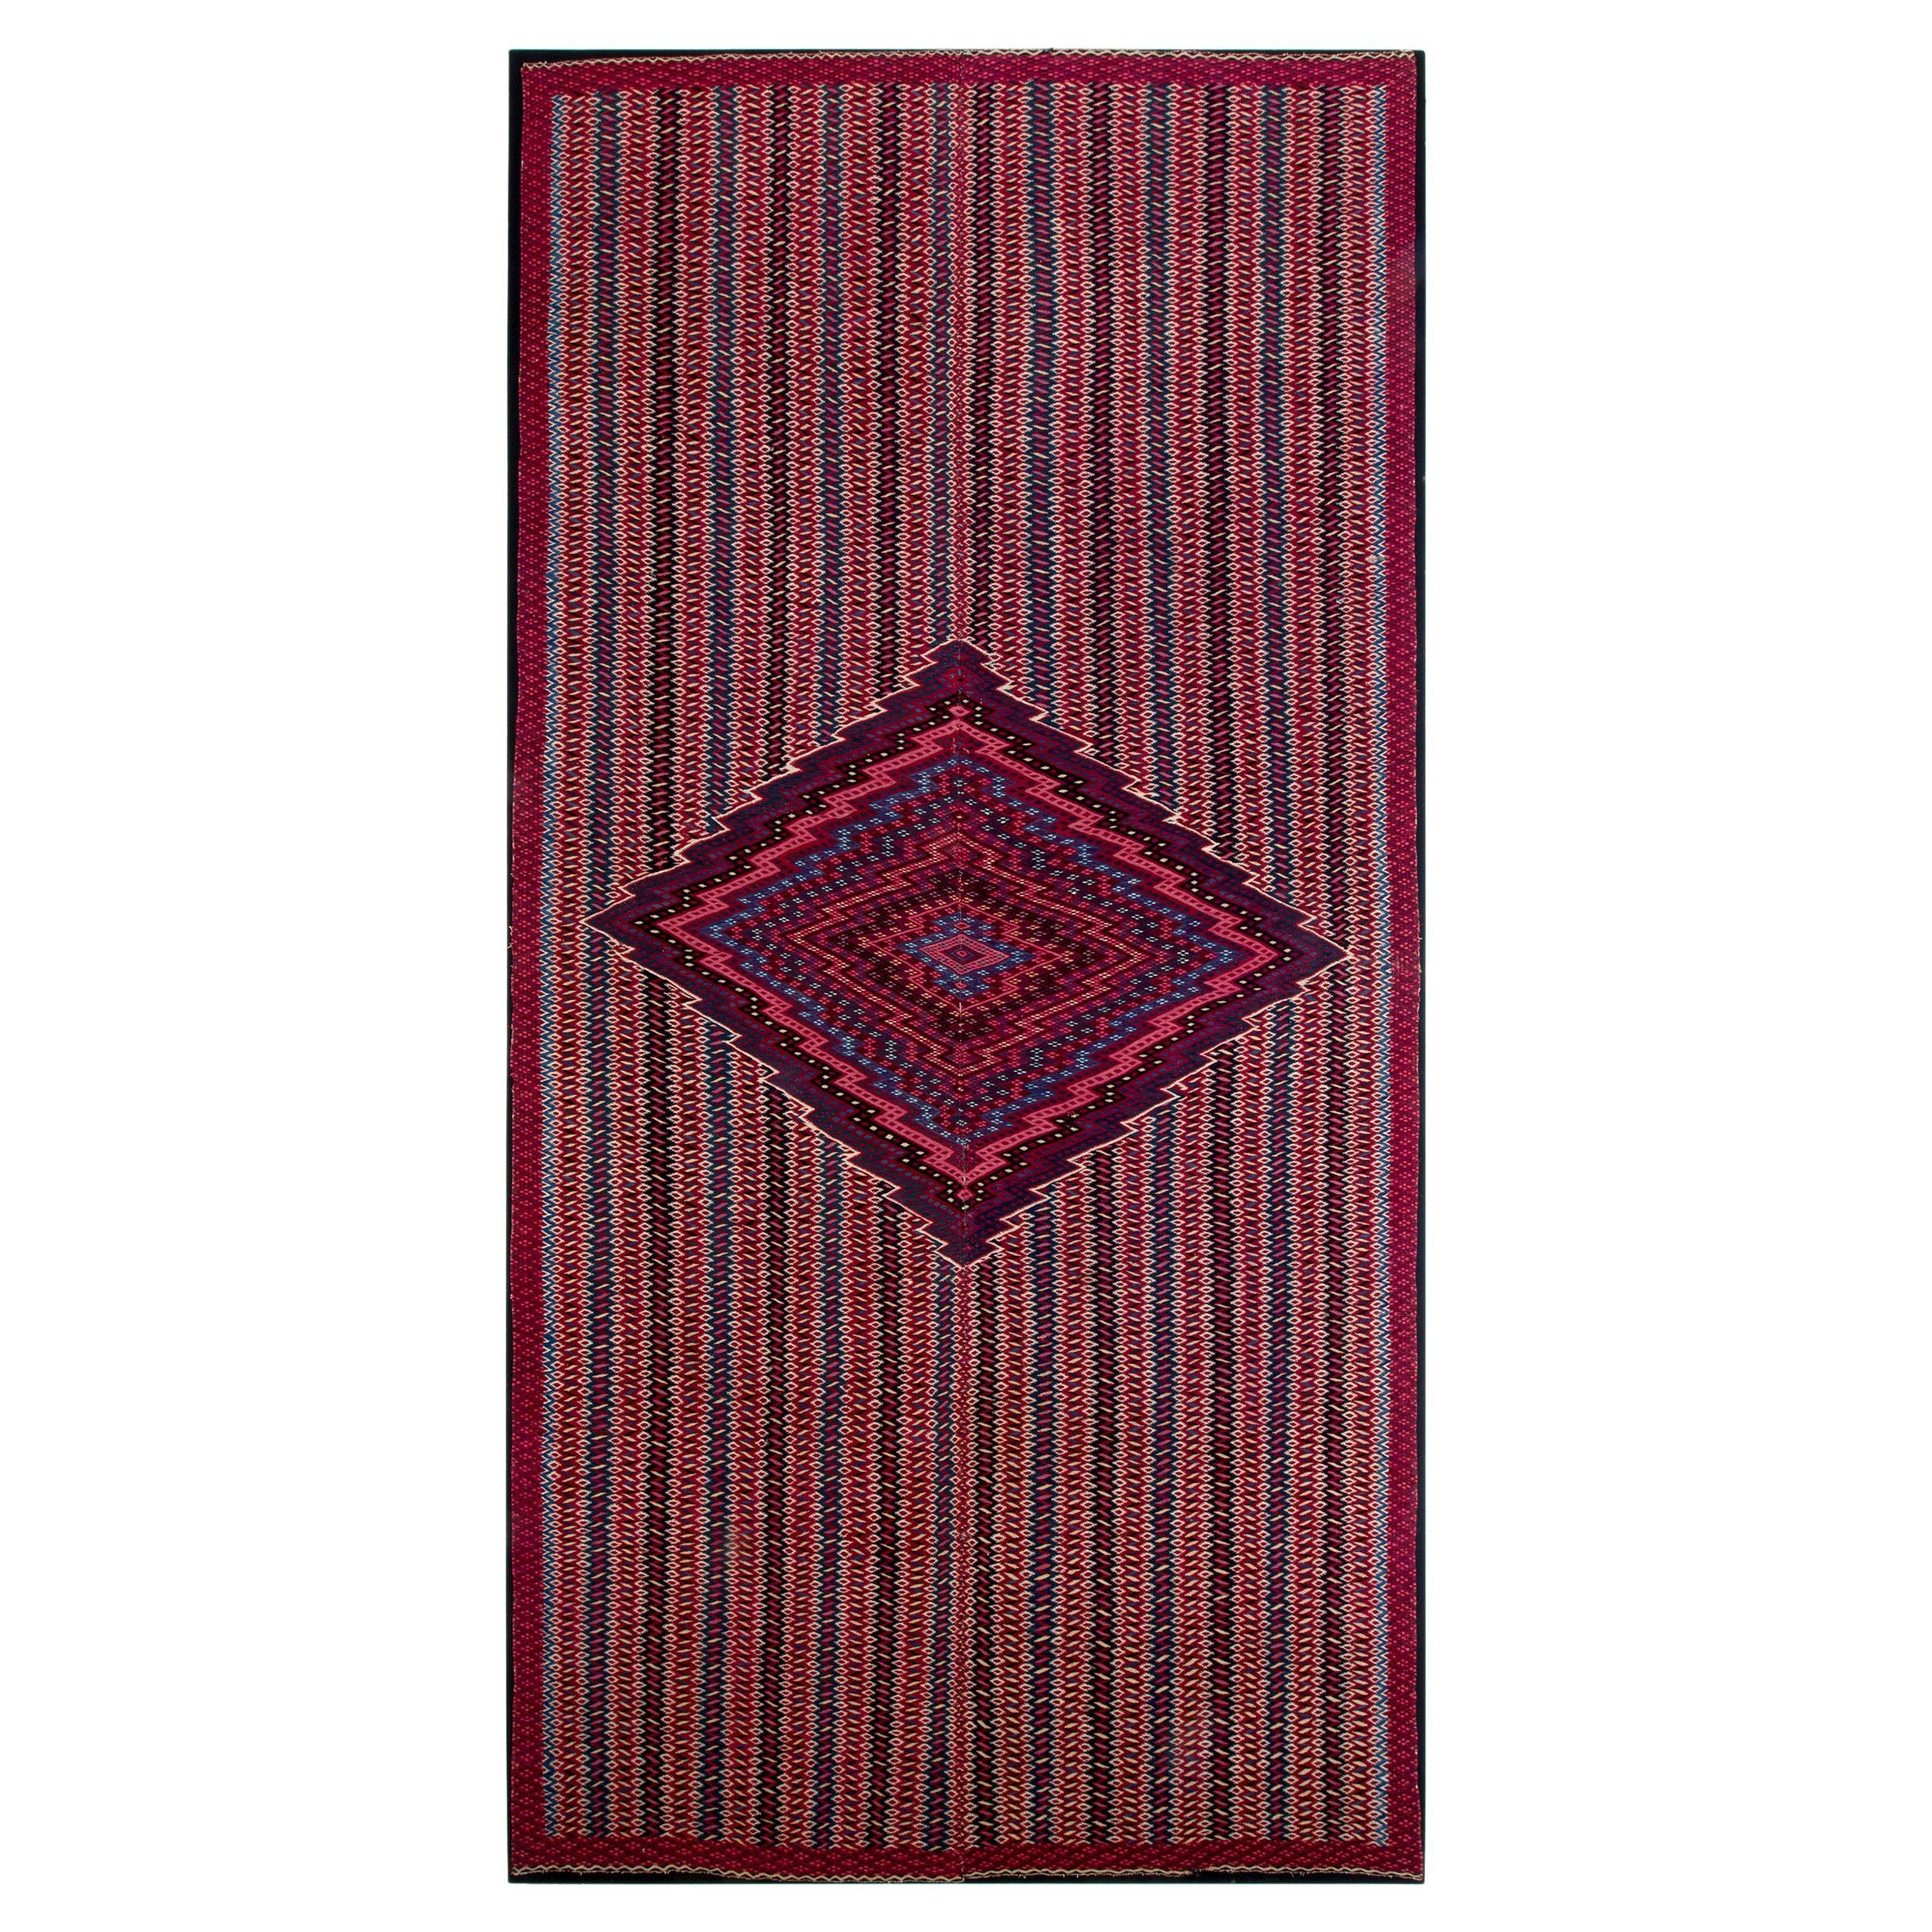 Antikes Mesoamerikanisches Saltillo-Serape-Textil, Übergangstextil, 1850er Jahre